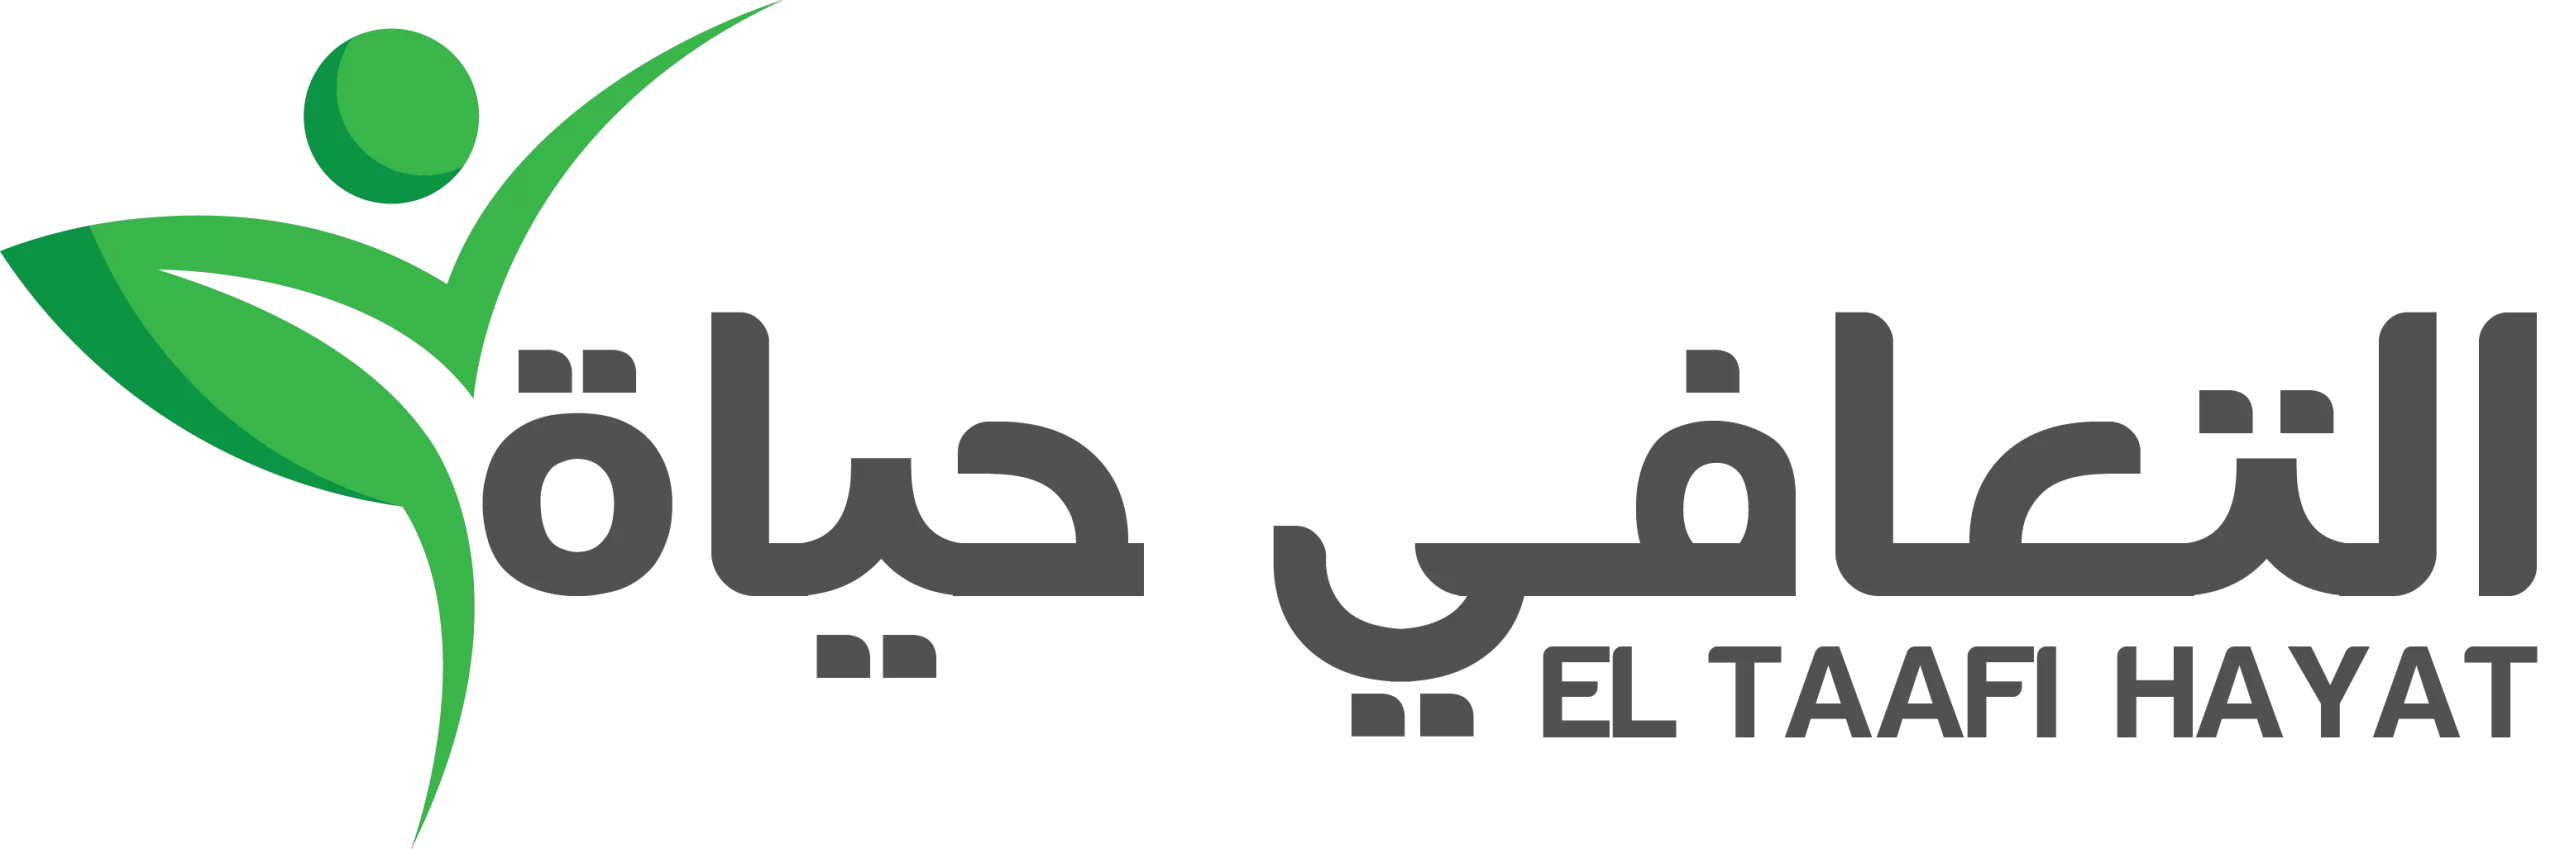 Taafy-logo